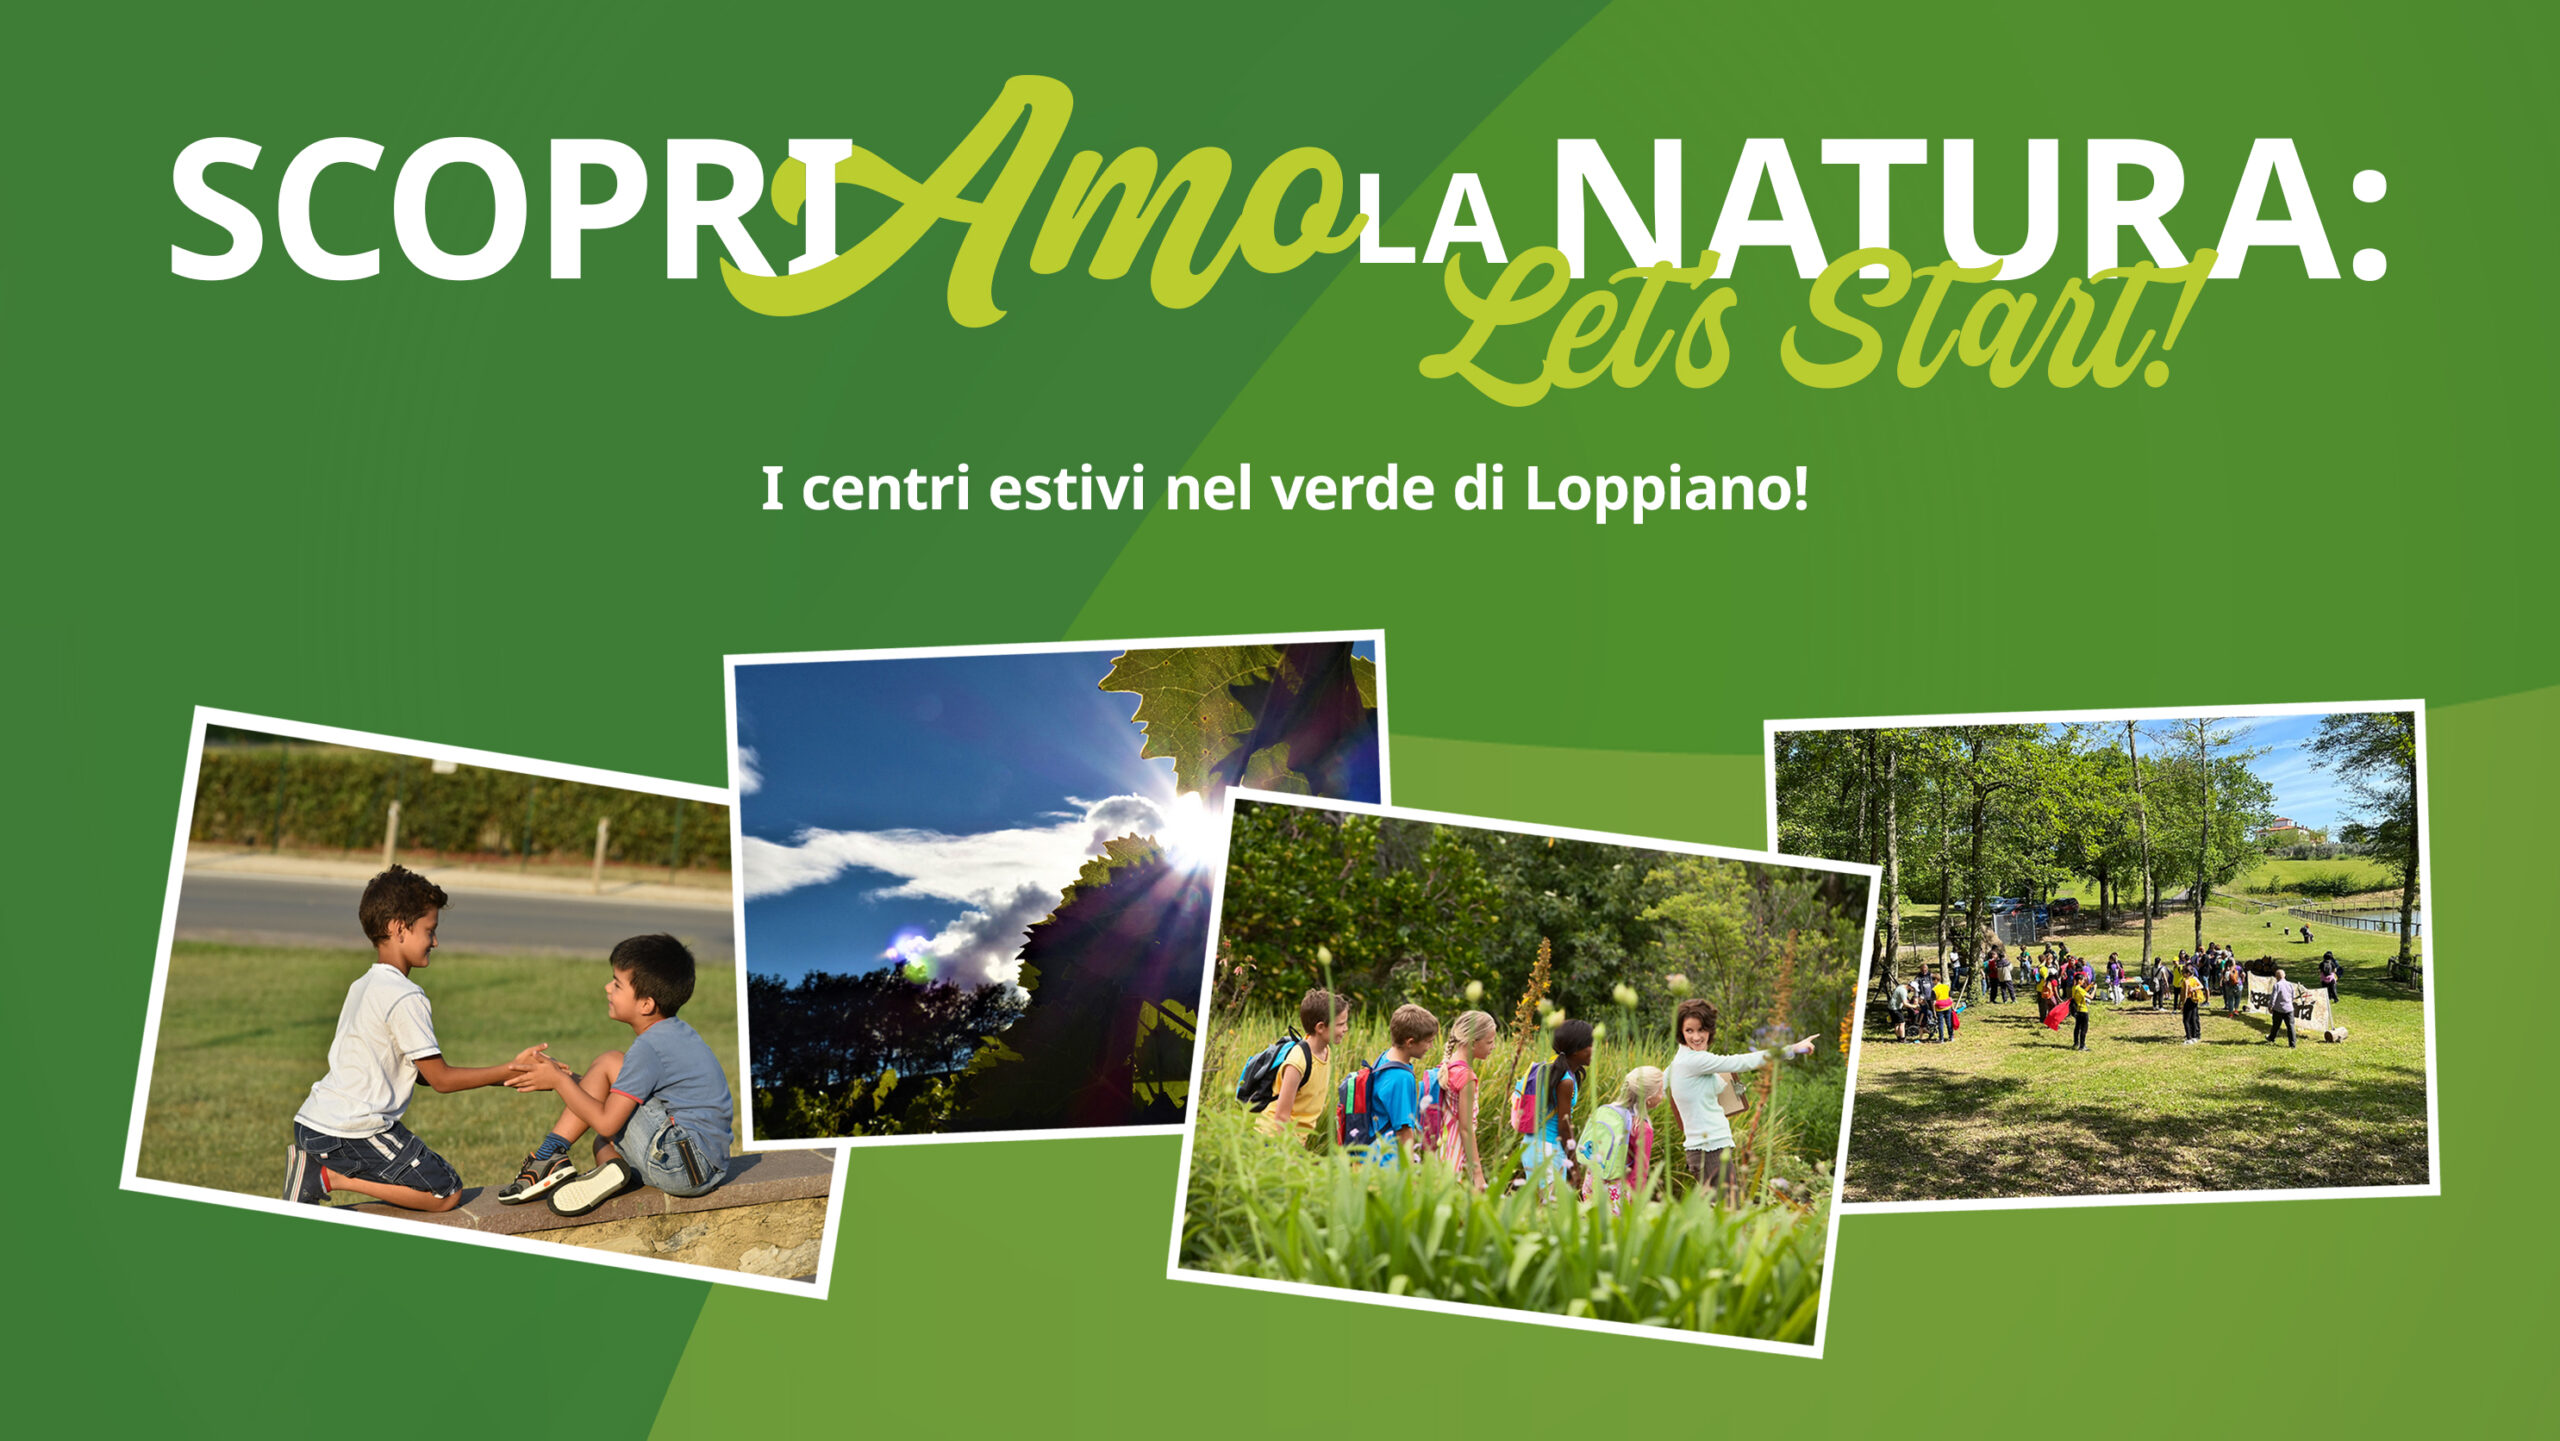 Centri estivi a Loppiano: ScopriAmo la Natura